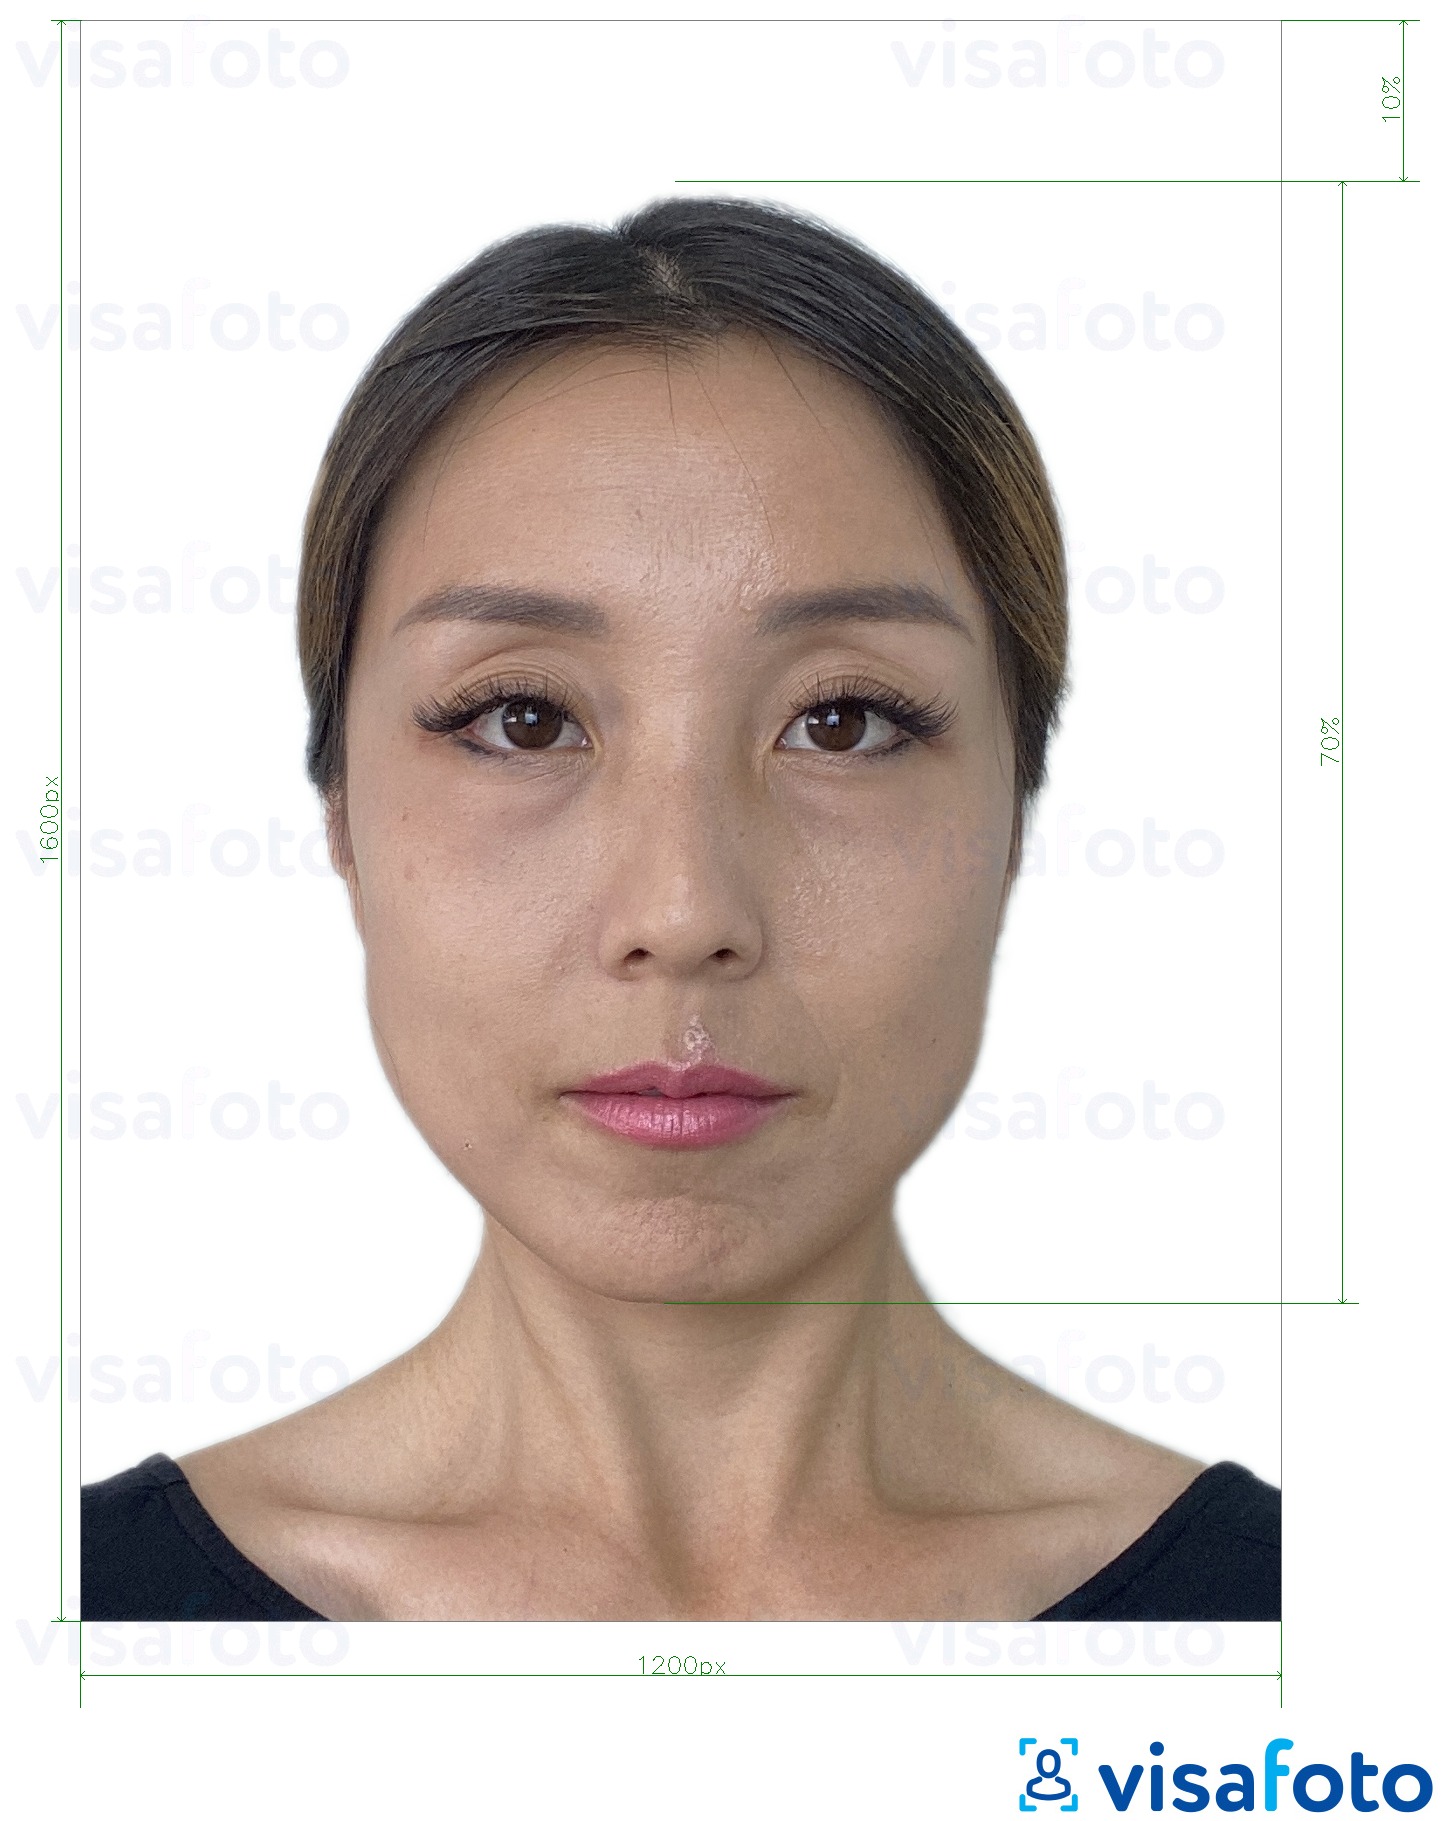 Shembulli i fotos per E-passport në internet Hongkong me 1200x1600 piksela me specifikimet ekzakte